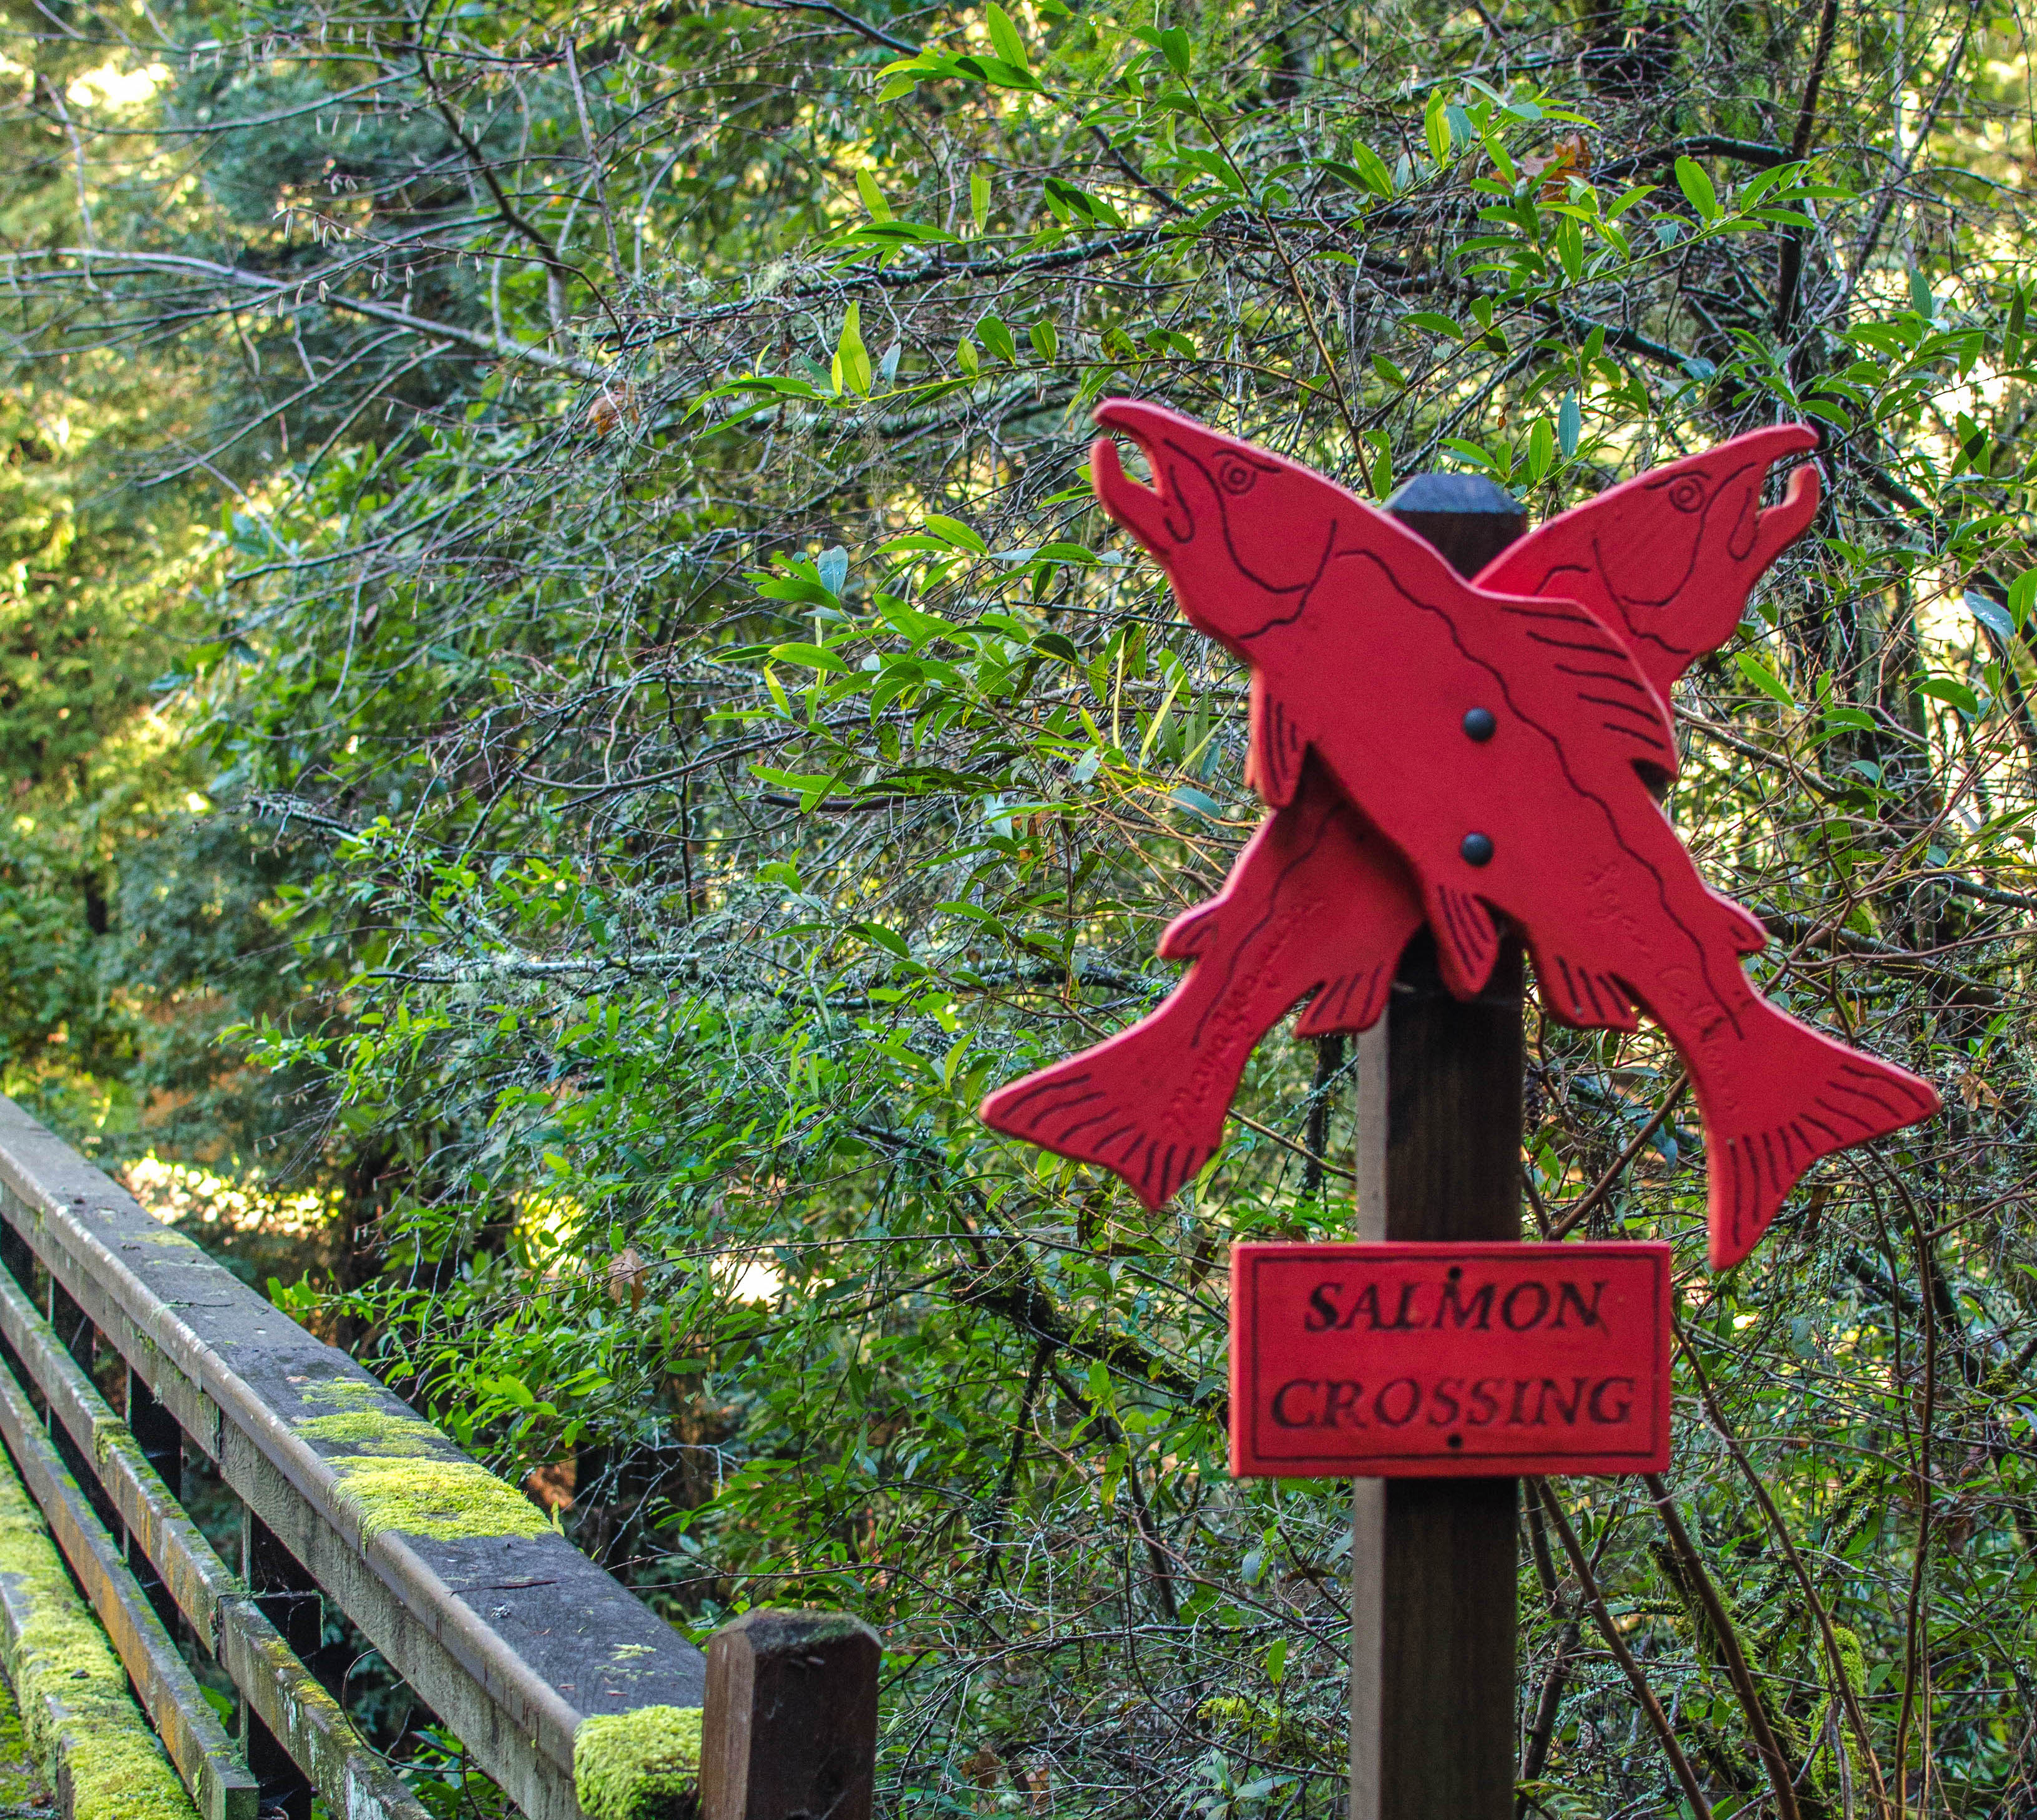 Salmon crossing sign near Lagunitas Creek.